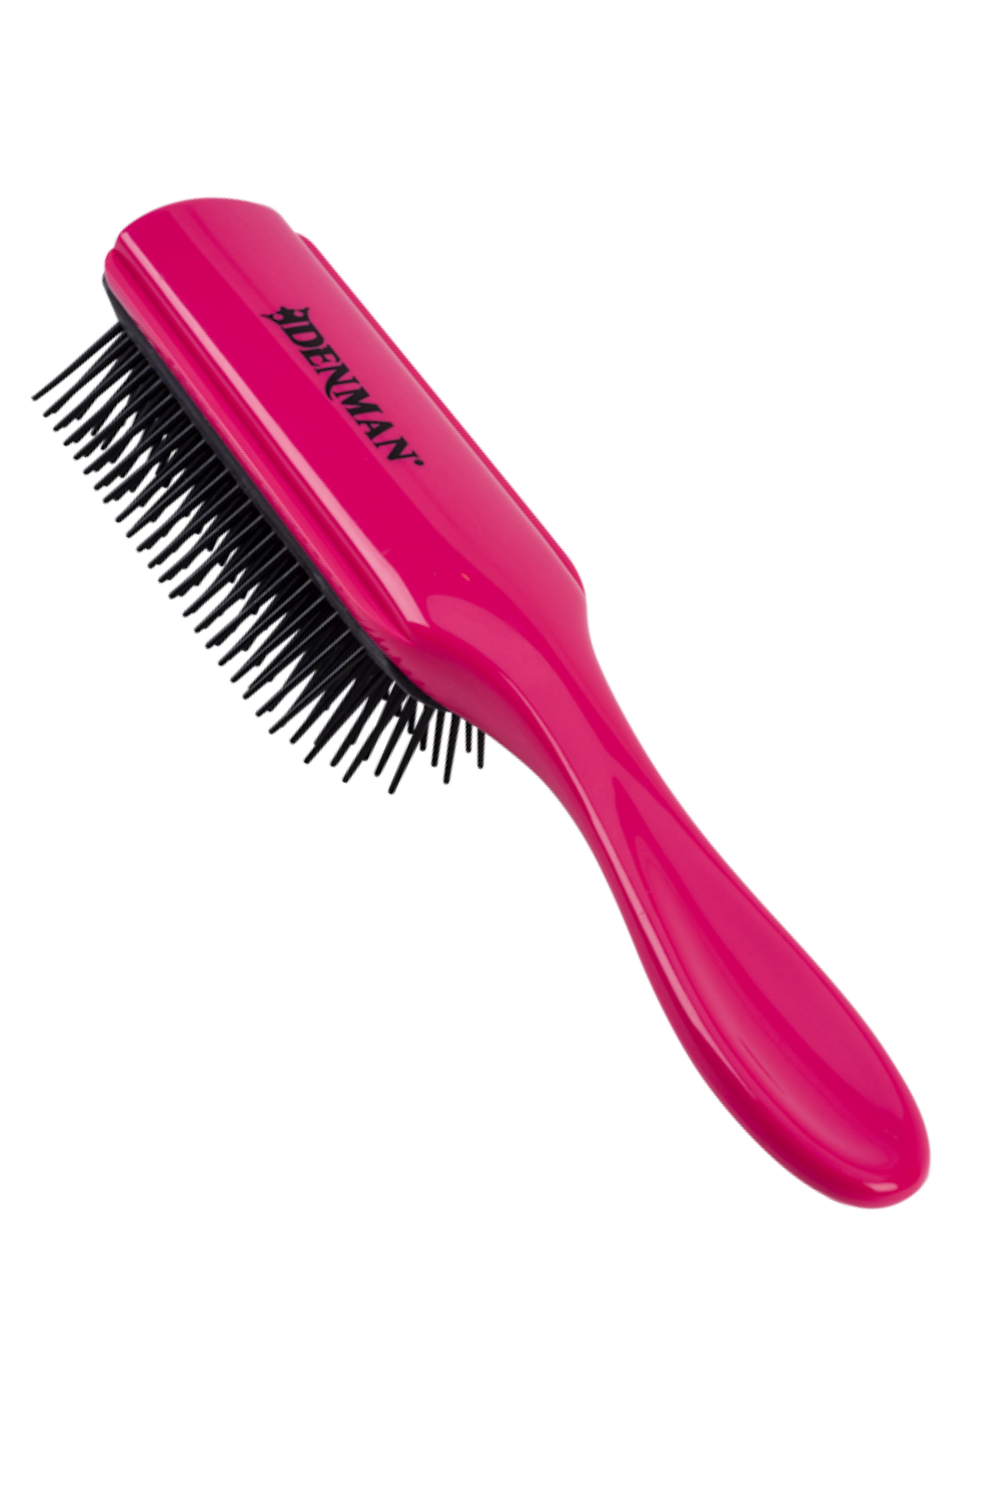 | Hairbrush Pink USA Orchid Styler D4 Definition Denman Curl Denman | | Original | – Asian